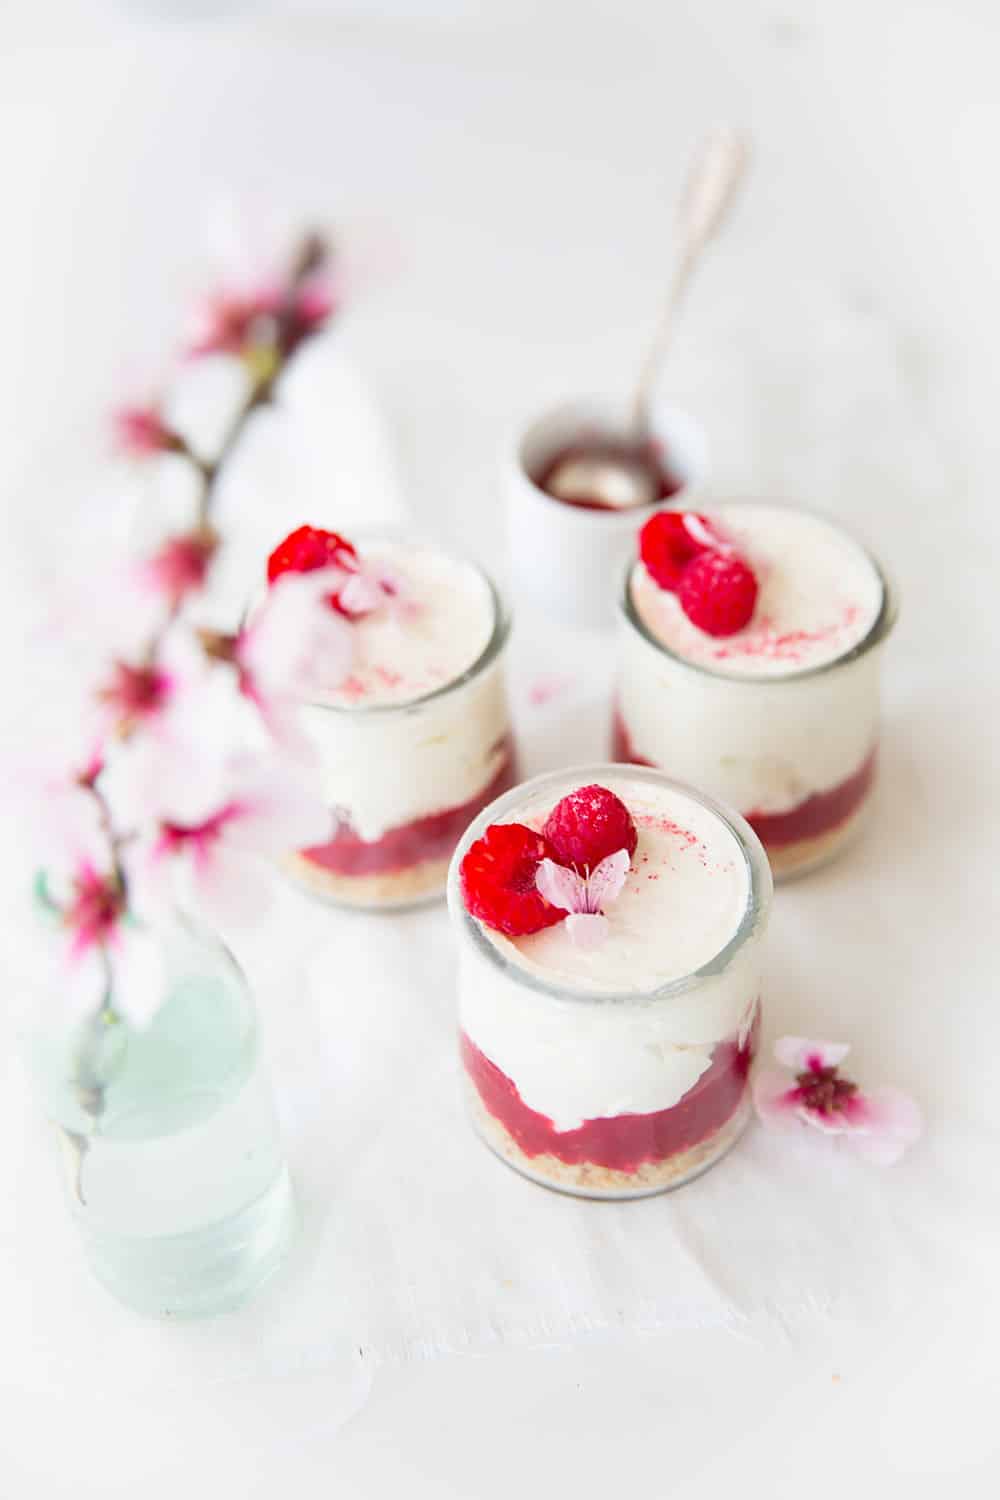 Cheesecakes 'in a jar' framboise rhubarbe